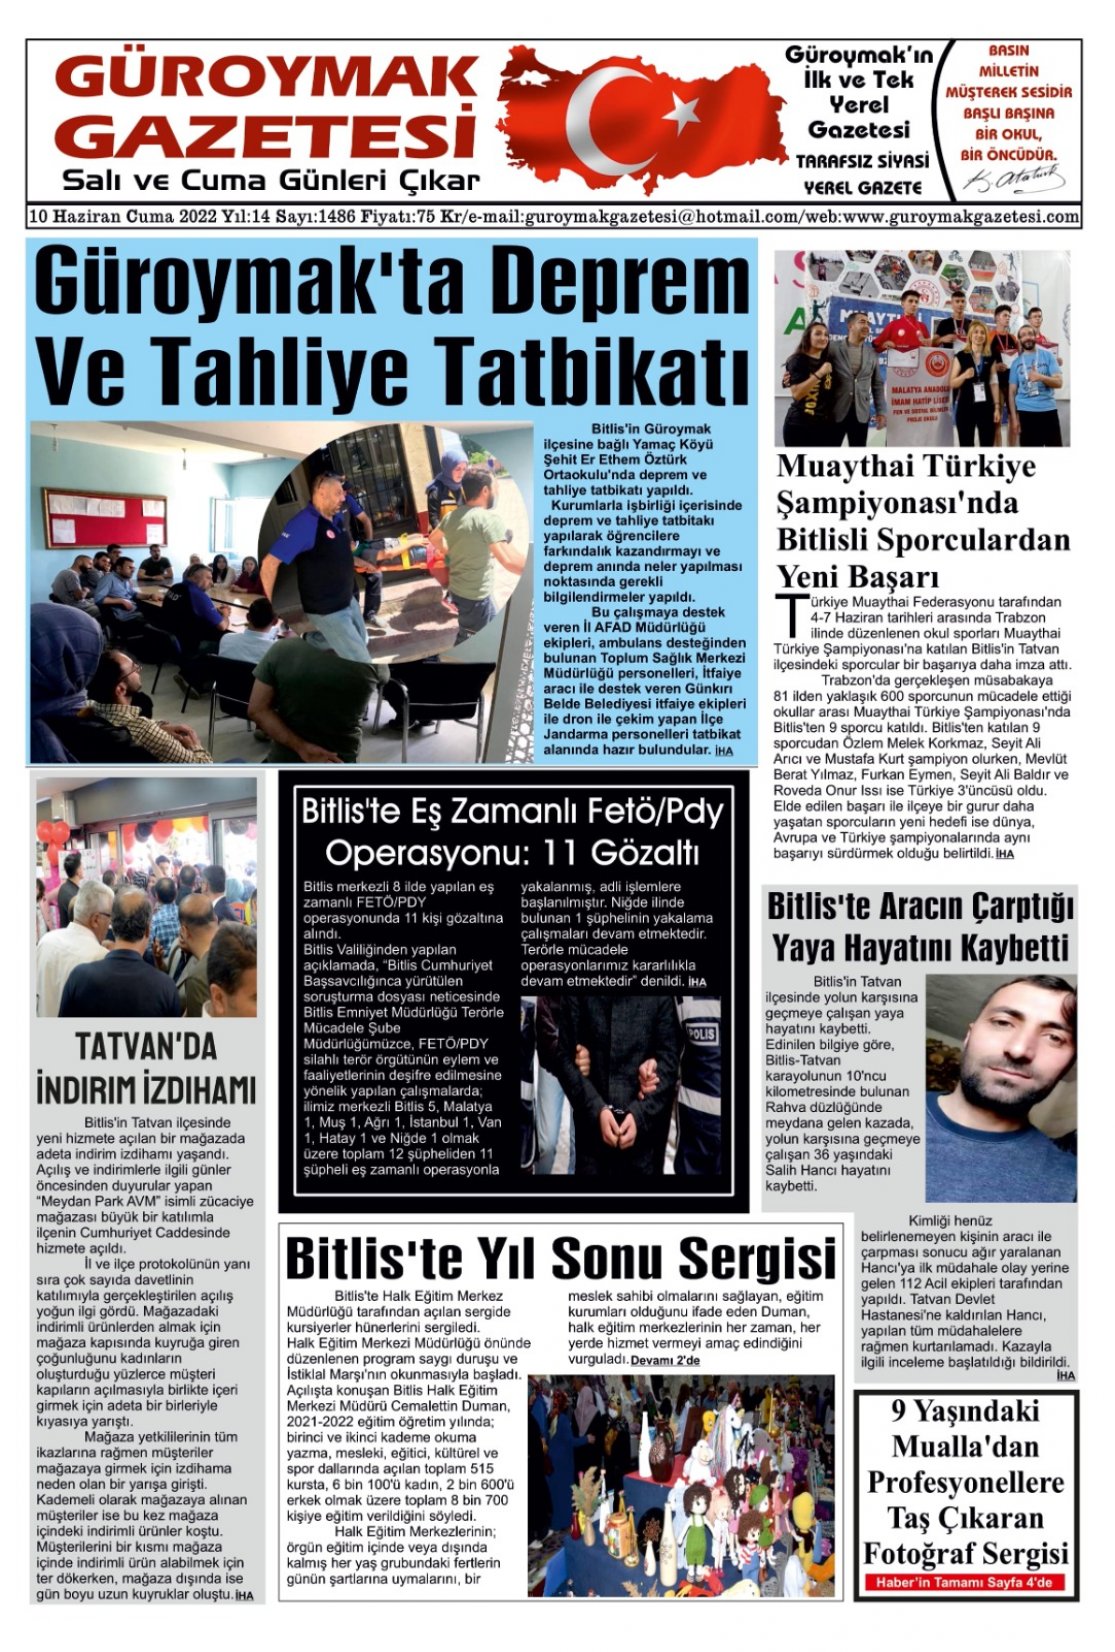 Güroymak Gazetesi WhatsApp Image 2022-06-09 at 23.38.24.jpeg Sayılı Gazete Küpürü